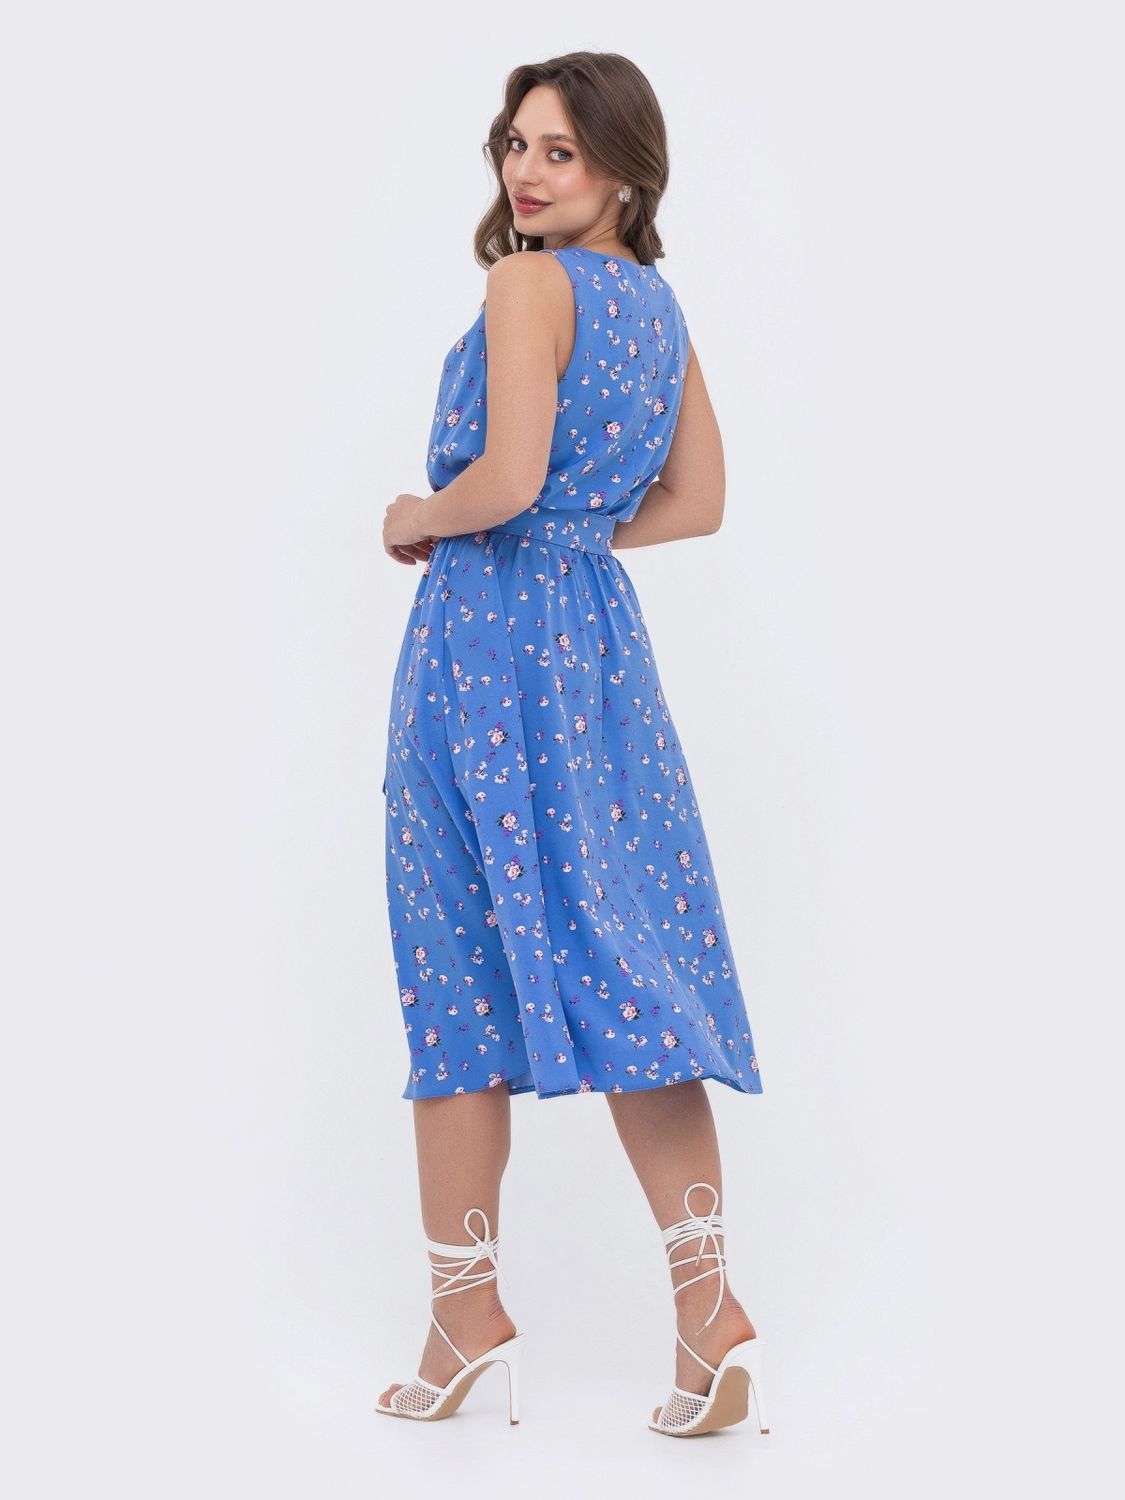 Літнє плаття зі спідницею-сонце блакитного кольору - фото